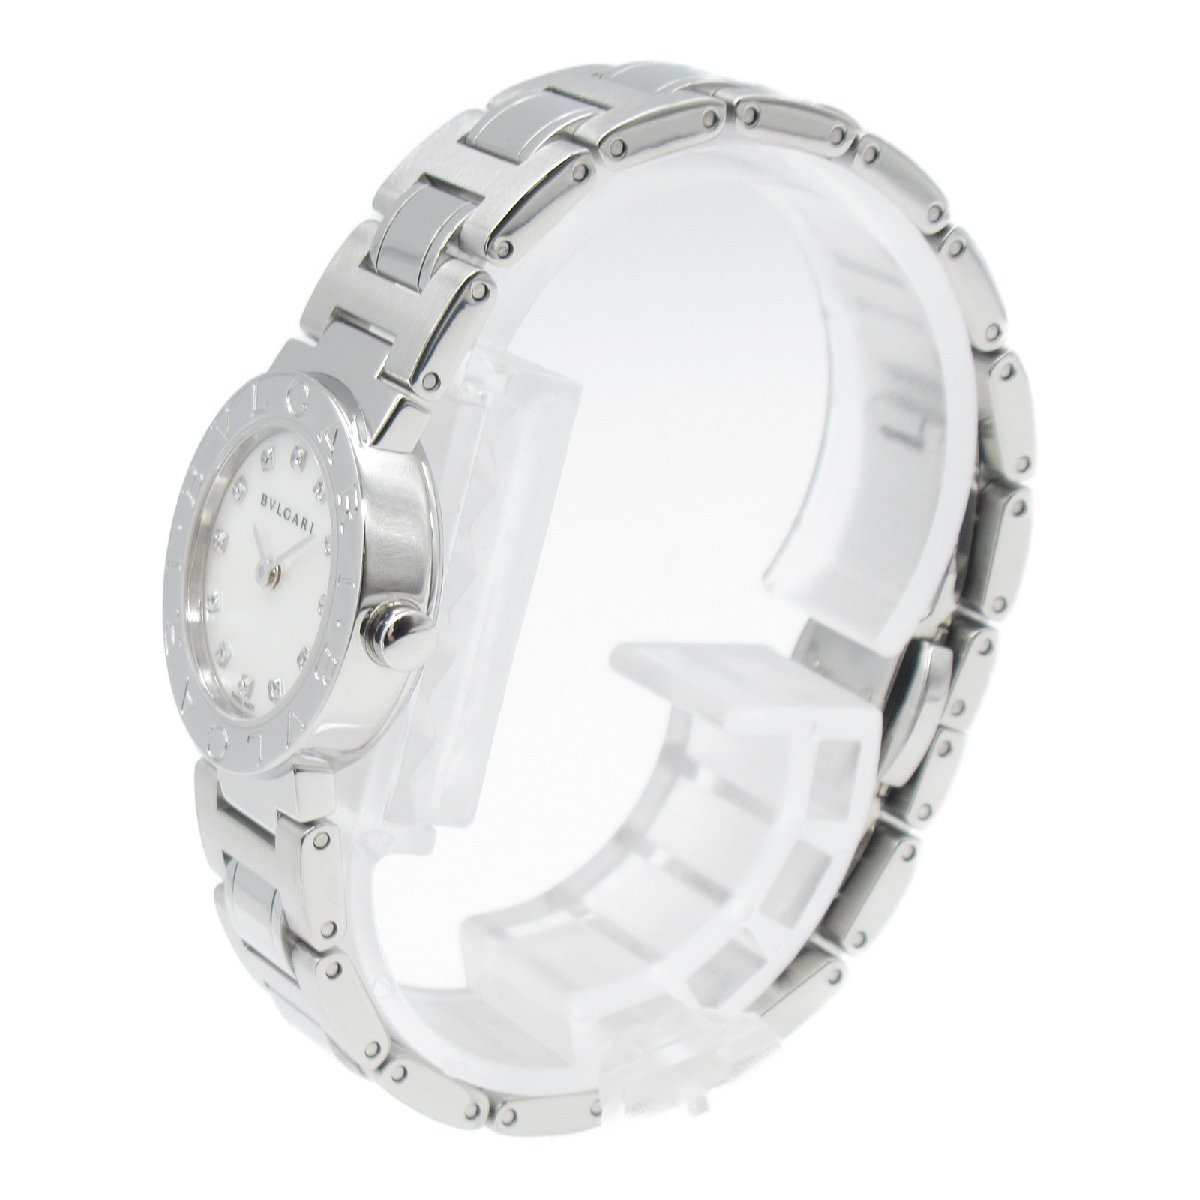 BVLGARI ブルガリ 腕時計 ブルガリ ブルガリ 10Pダイヤ 腕時計 ウォッチ ホワイト系 ステンレススチール ダイヤモンド 中古 レディース_画像2